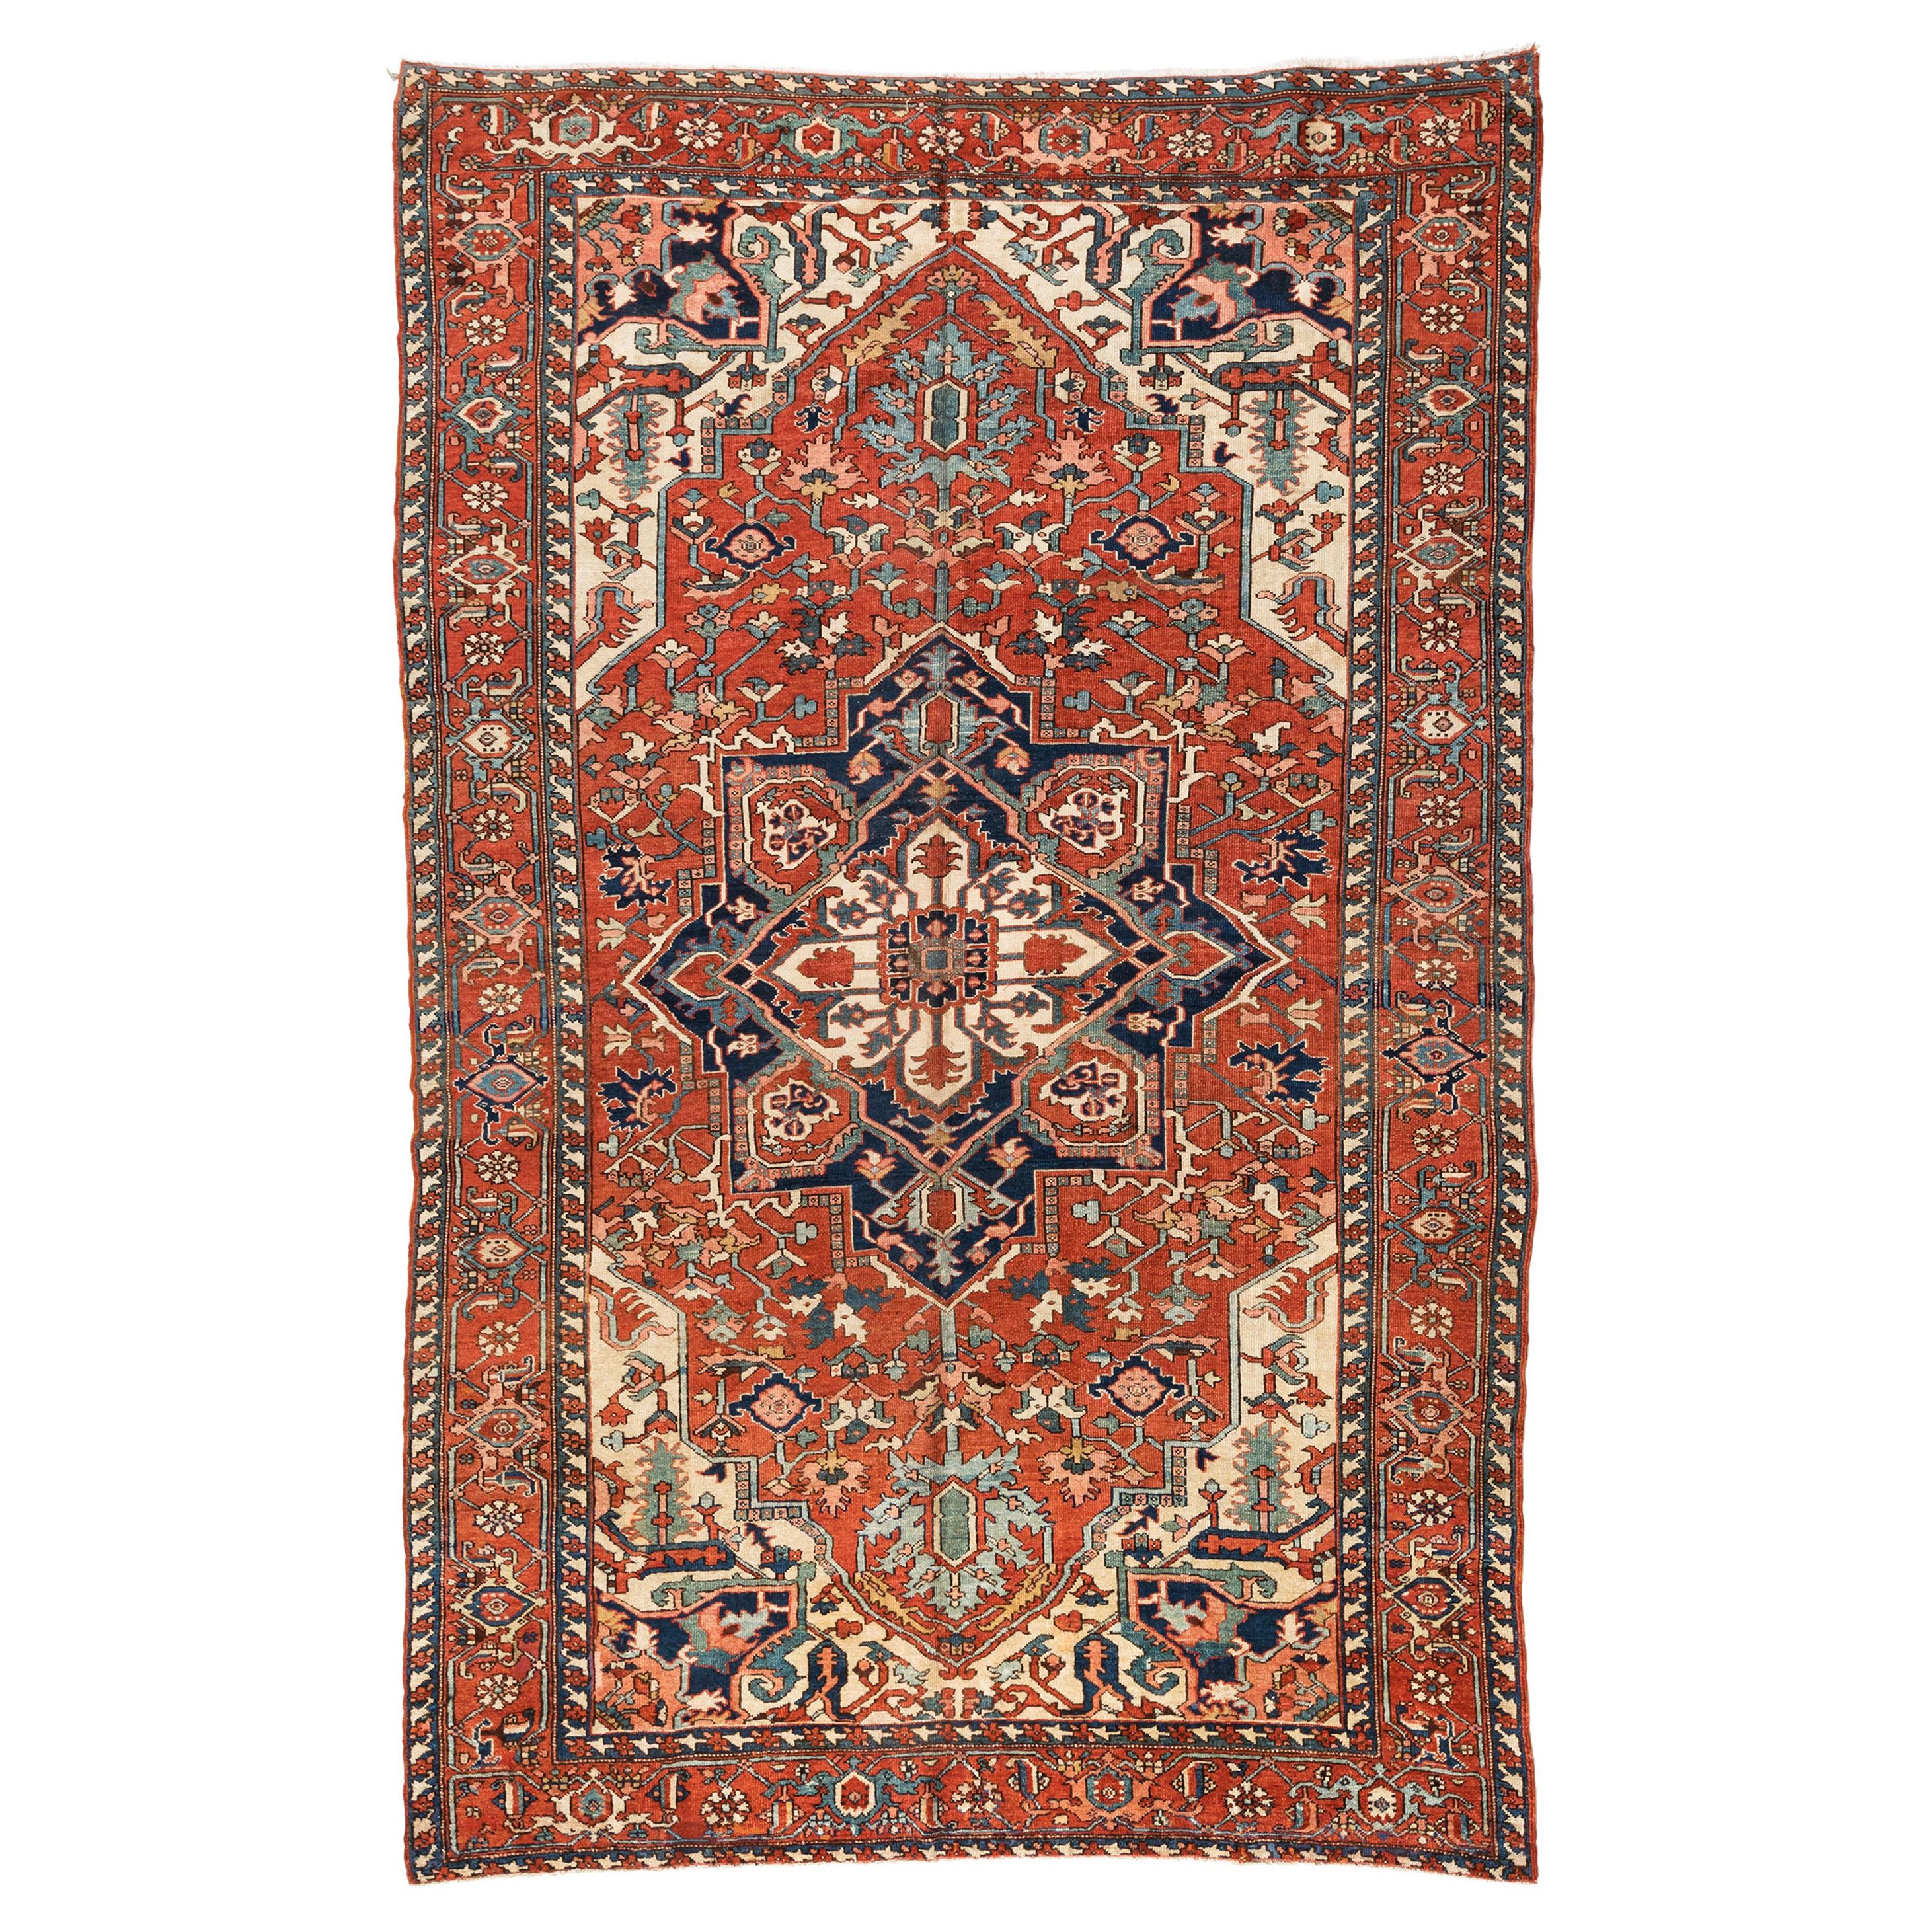 Antiker persischer roter, elfenbeinfarbener und blauer Serapi-Teppich, ca. 1920-1930